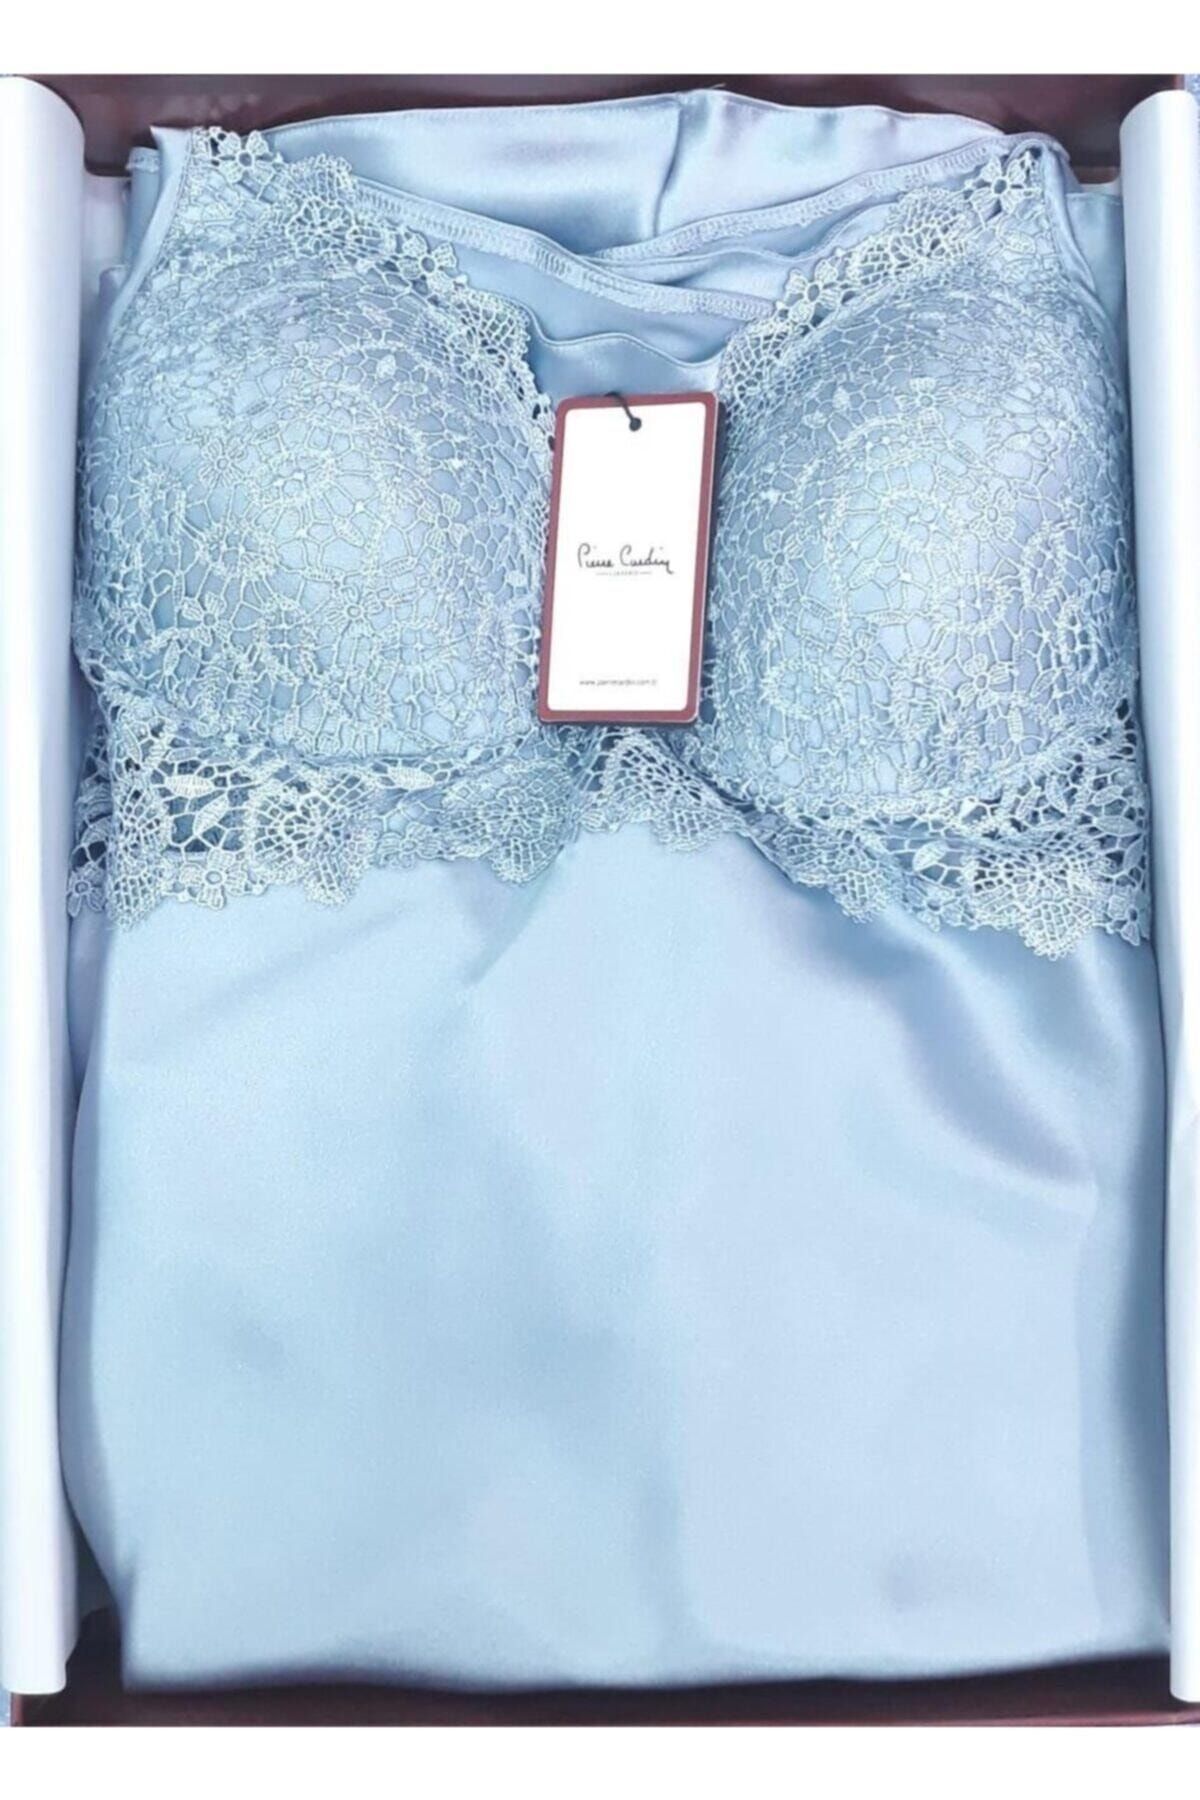 Pierre Cardin Kadın Saten Çeyizlik Altılı Pijamalı Set Takımı 6955